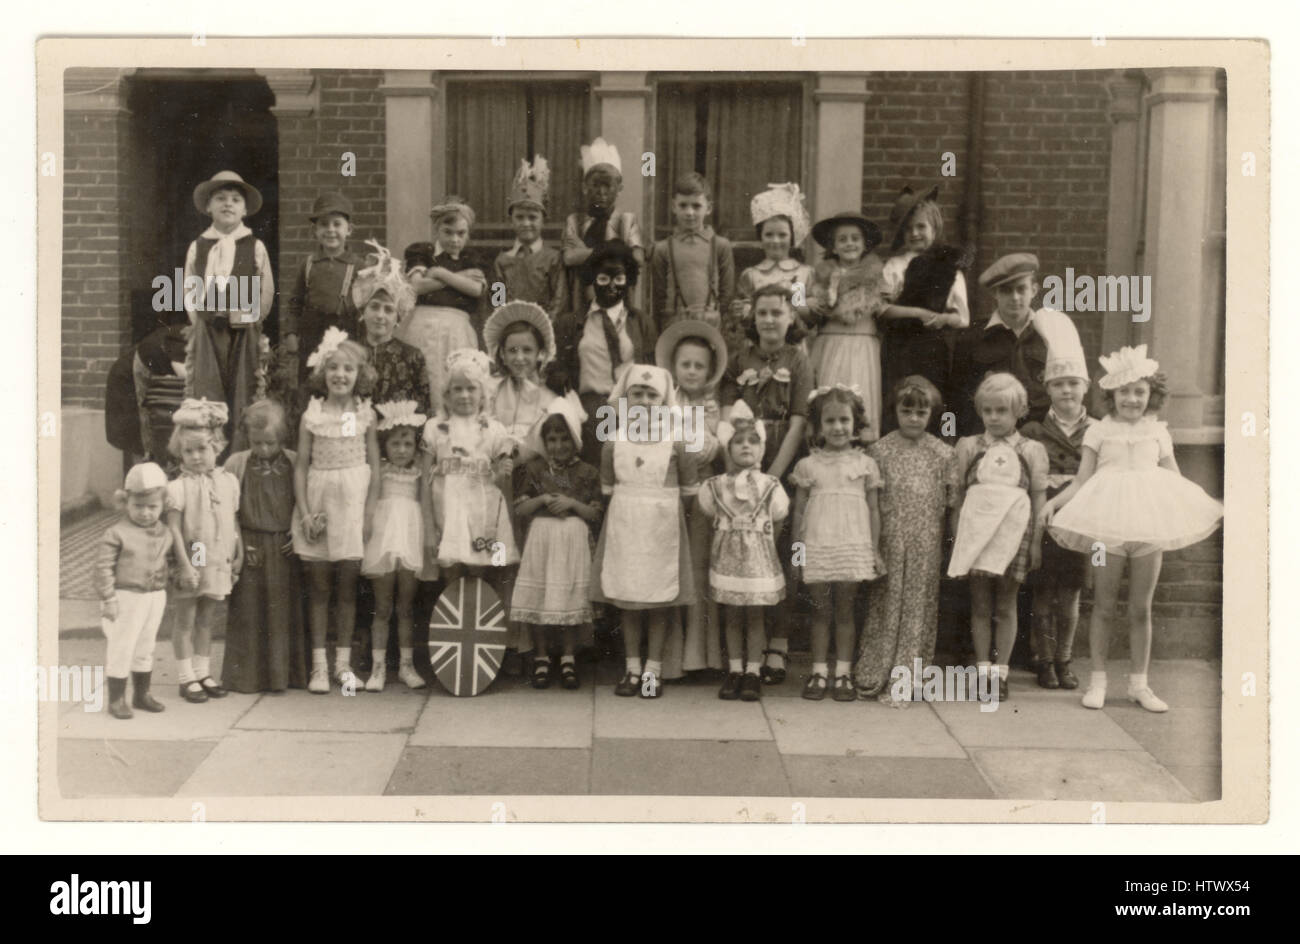 Postkarte des Kinder-V.E. (Sieg in Europa) Tag Party und Feiern, um das Ende des 2. Weltkrieges zu feiern - die Kinder sind in ausgefallenen Kleidern, in Cornwall Grove, Chiswick, London, U.K. 8. Mai 1945 (das Ende des Zweiten Weltkriegs) Stockfoto